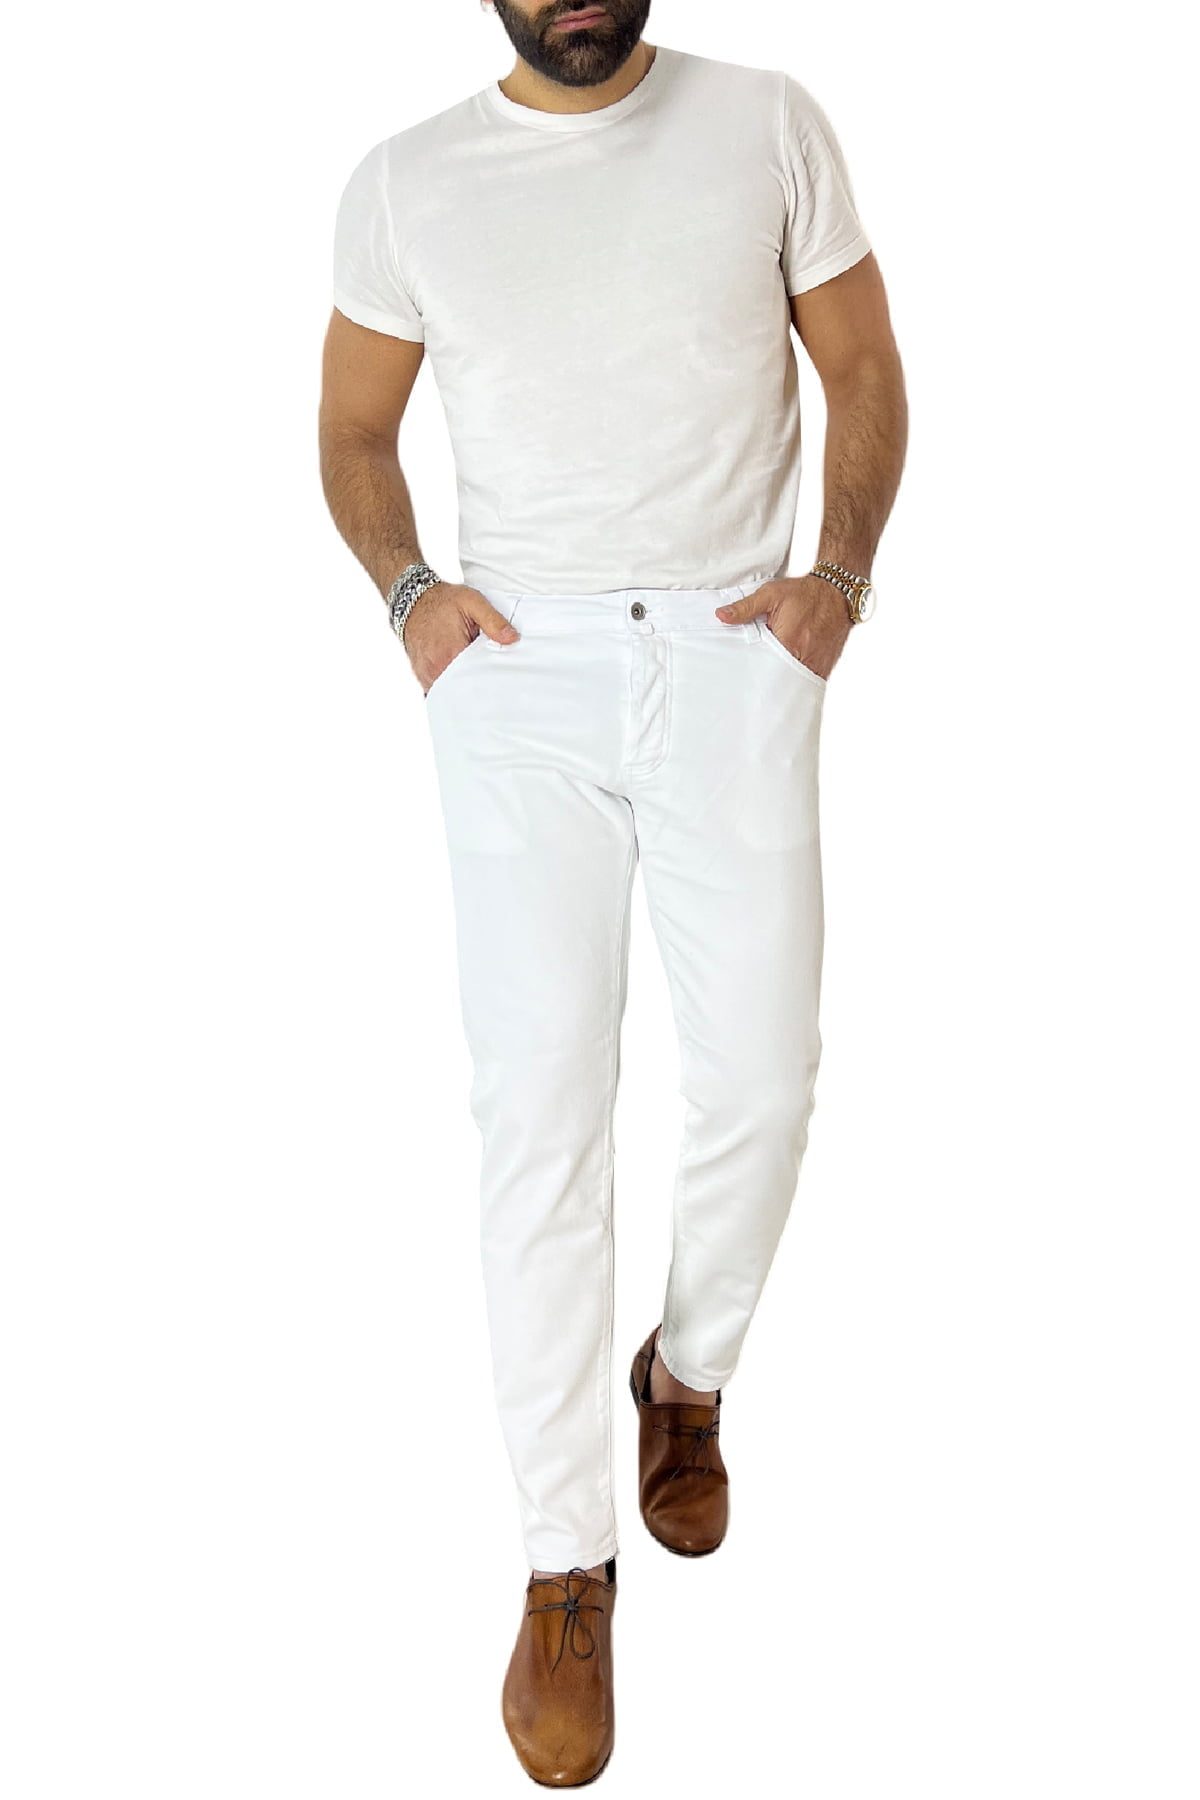 Jeans uomo bianco tinta unita modello 5 tasche slim fit estivo made in italy